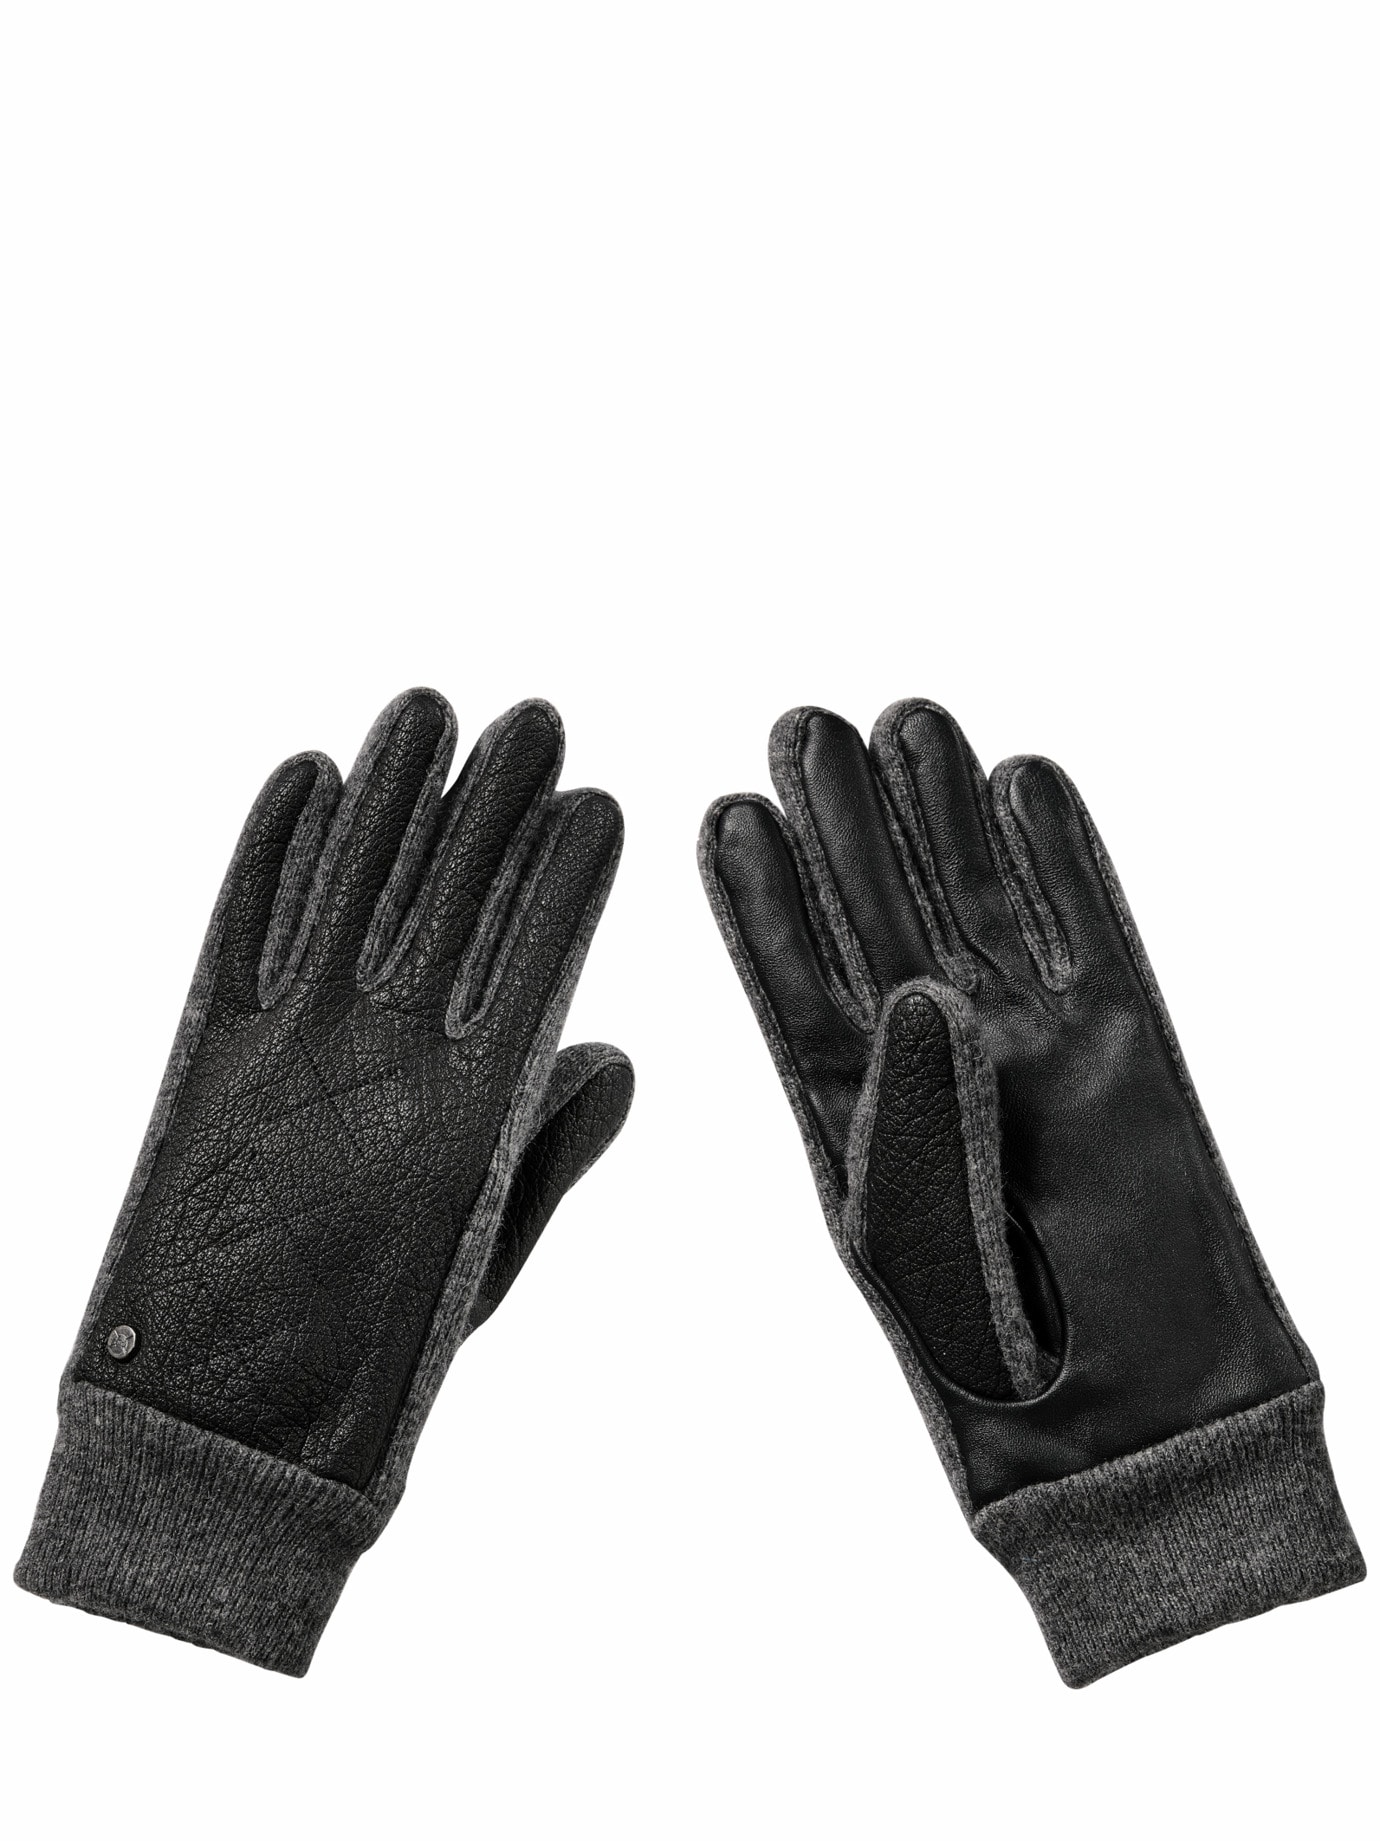 Tipper-Lederhandschuhe für Herren | Mey & Edlich | Handschuhe